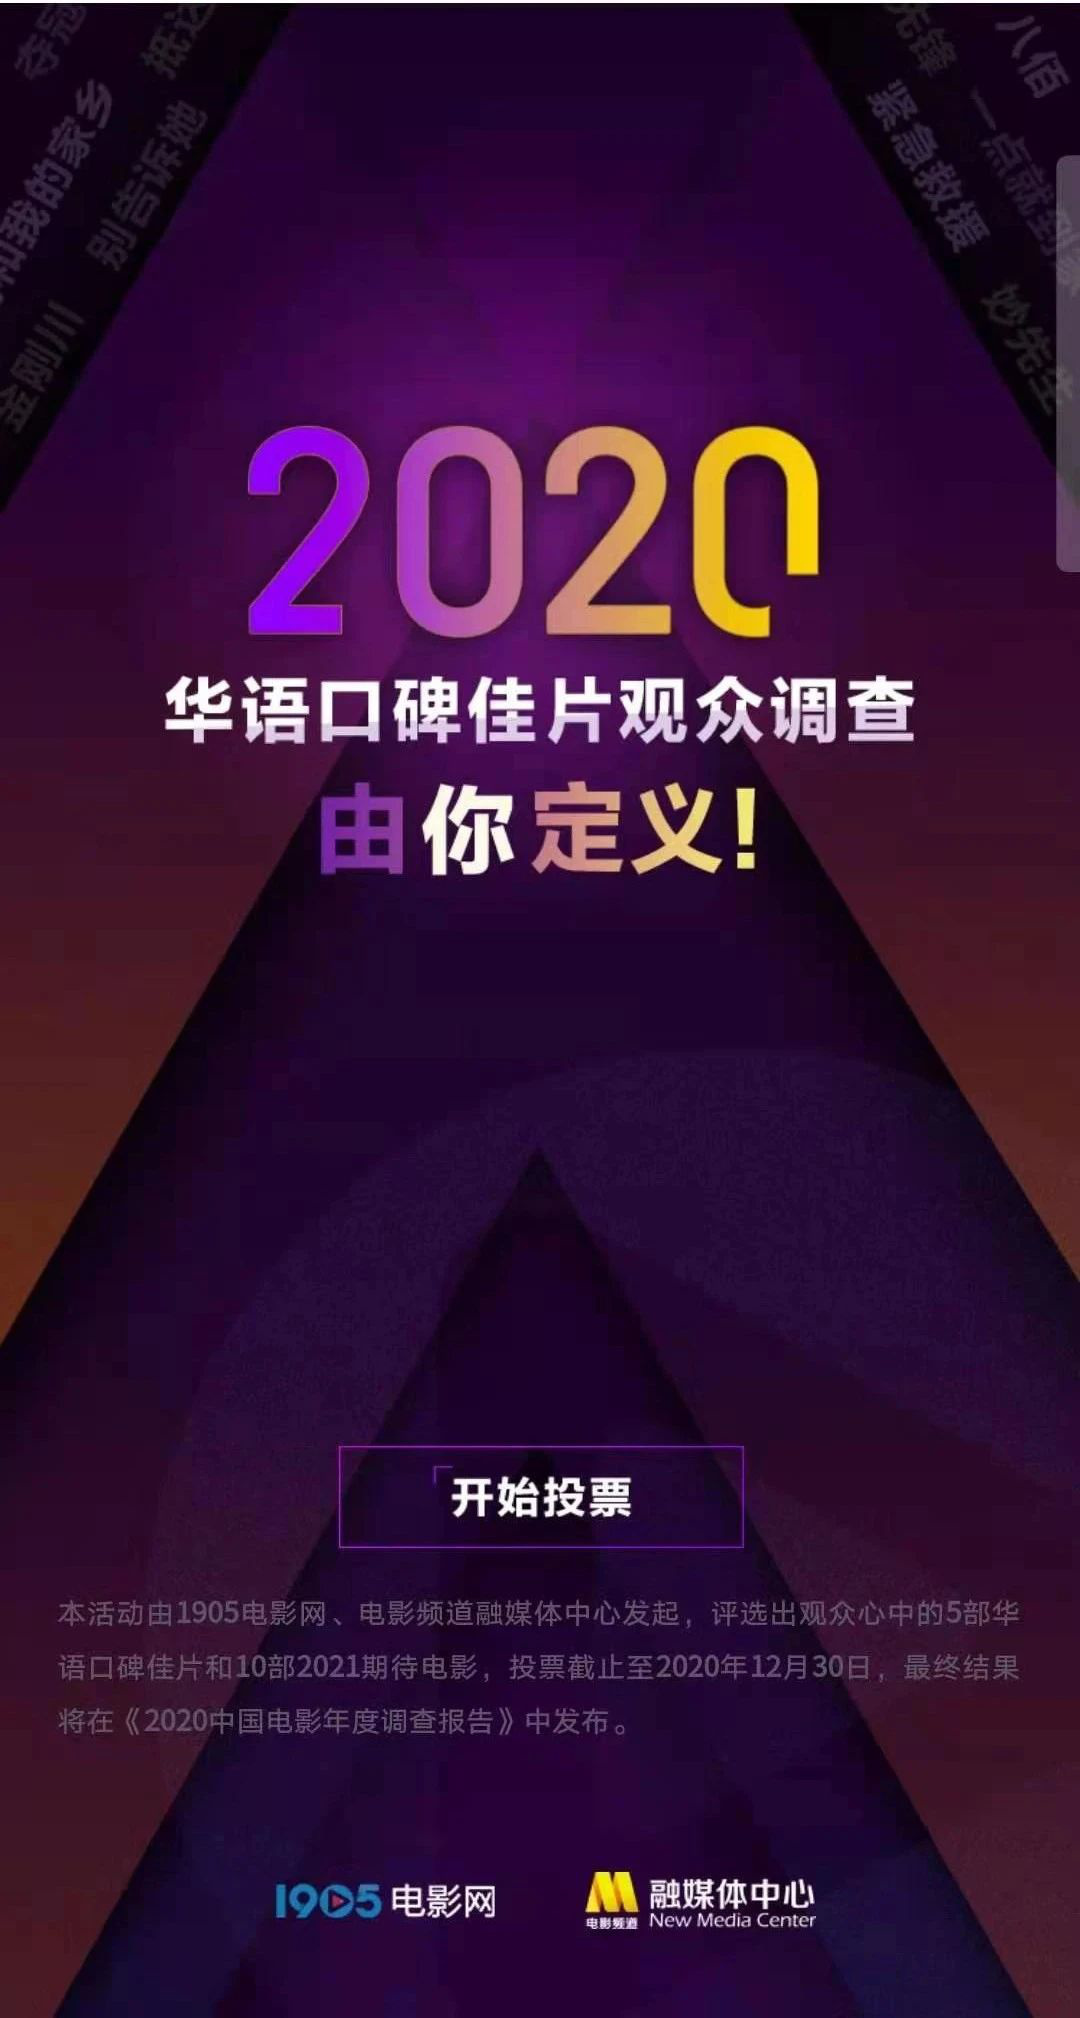 2020华语佳片调查开启 电影频道邀您晒出年度片单